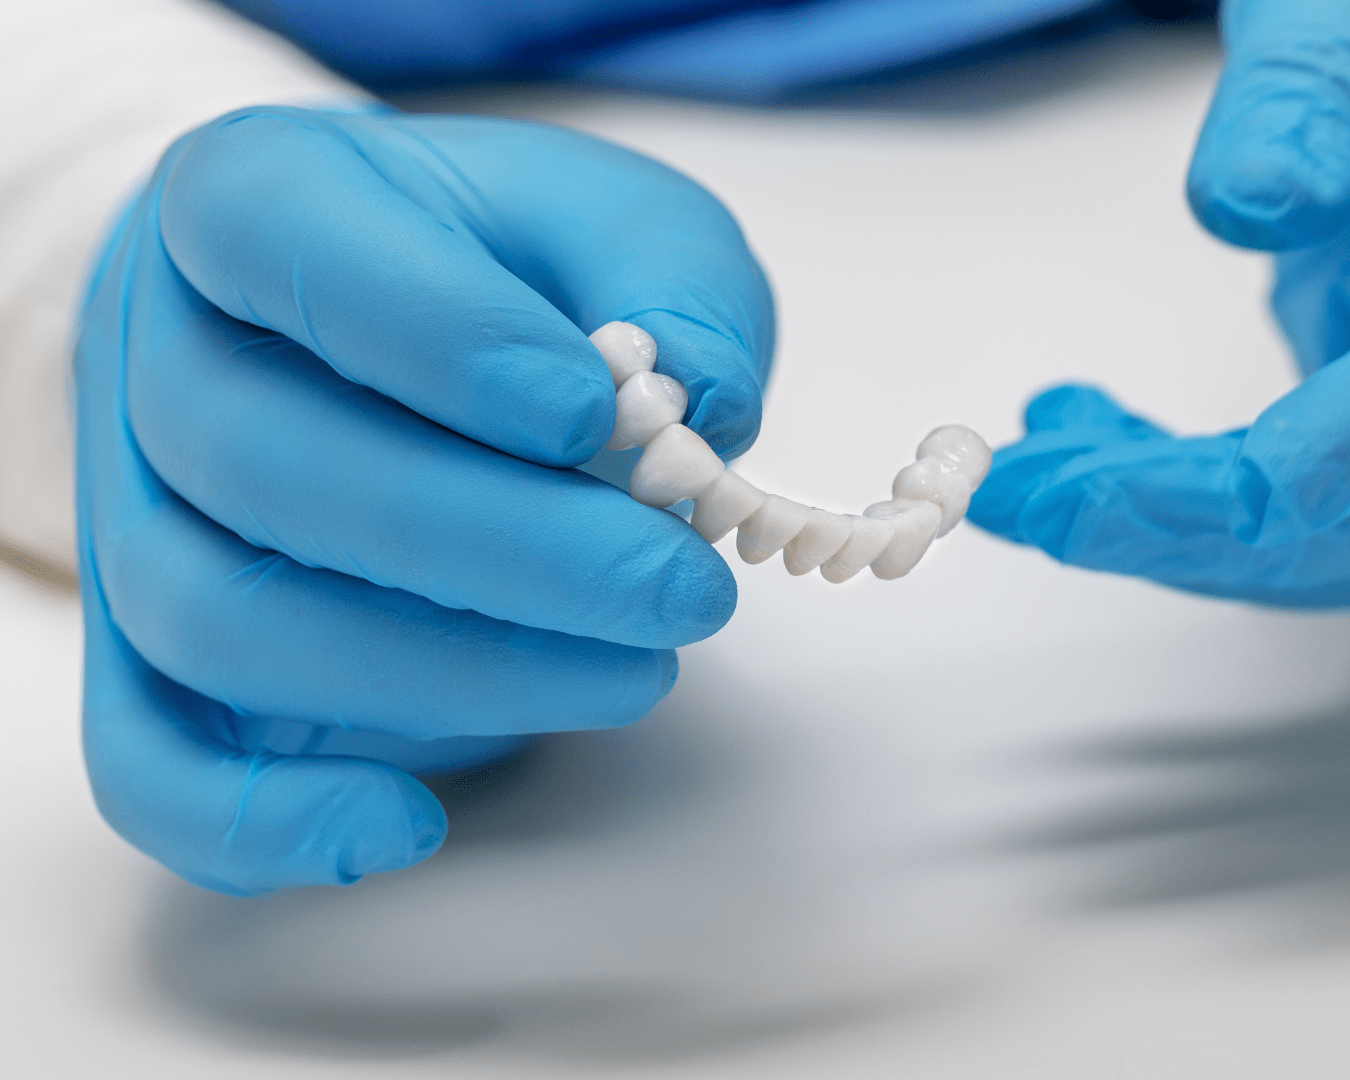 Dentist holds ceramic dental crowns in his hands, zirconium bridge, close-up